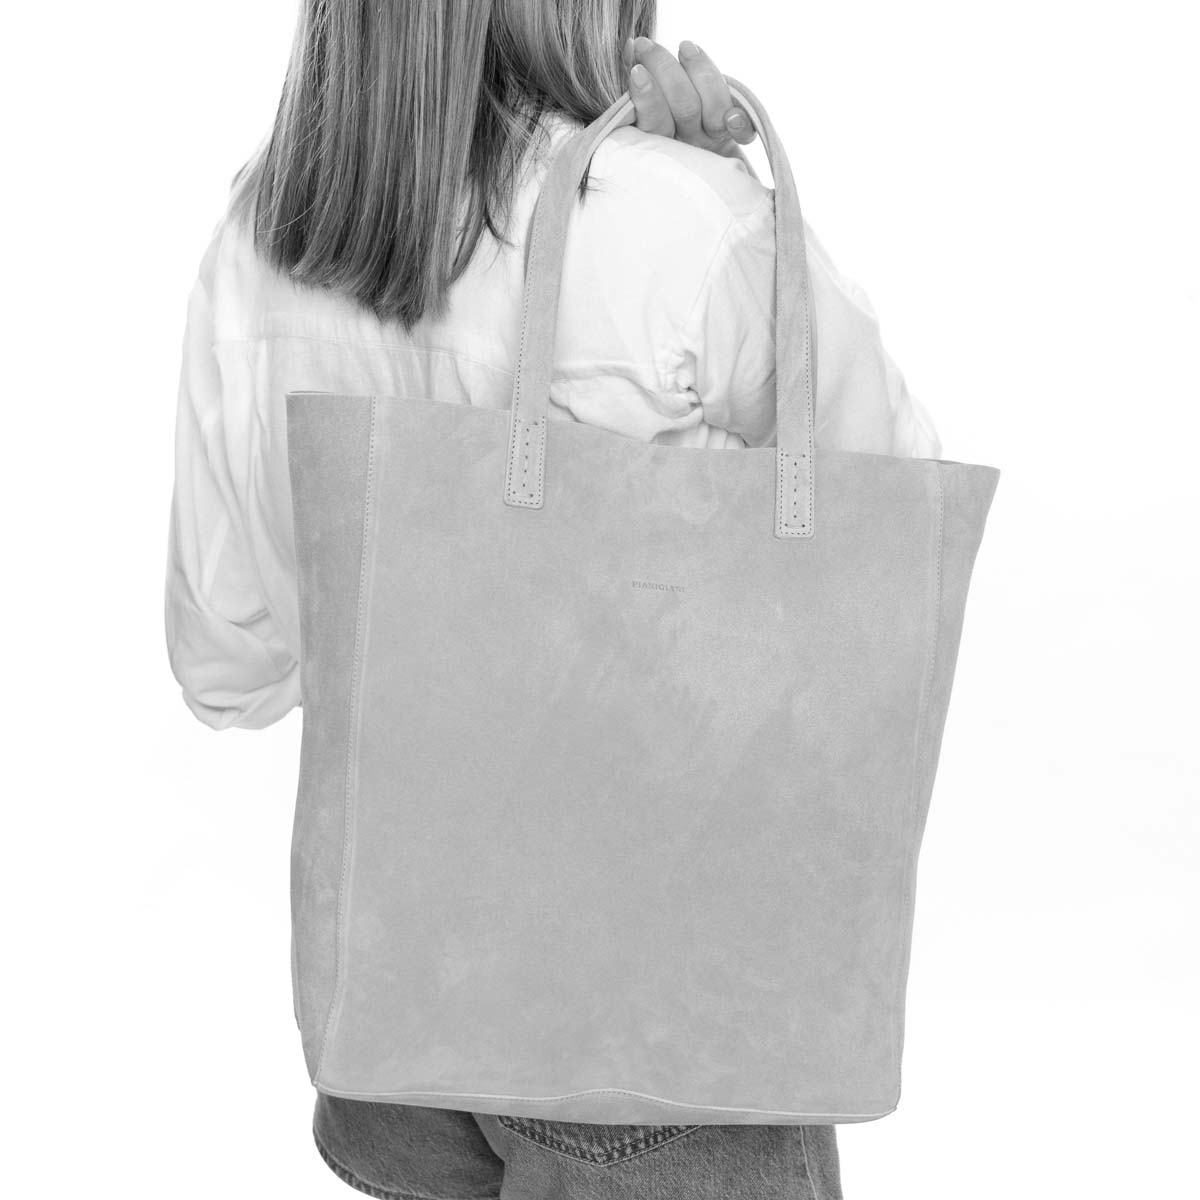 Soft, borsa da donna modello shopping in pelle scamosciata blu, realizzata e venduta da Pianigiani